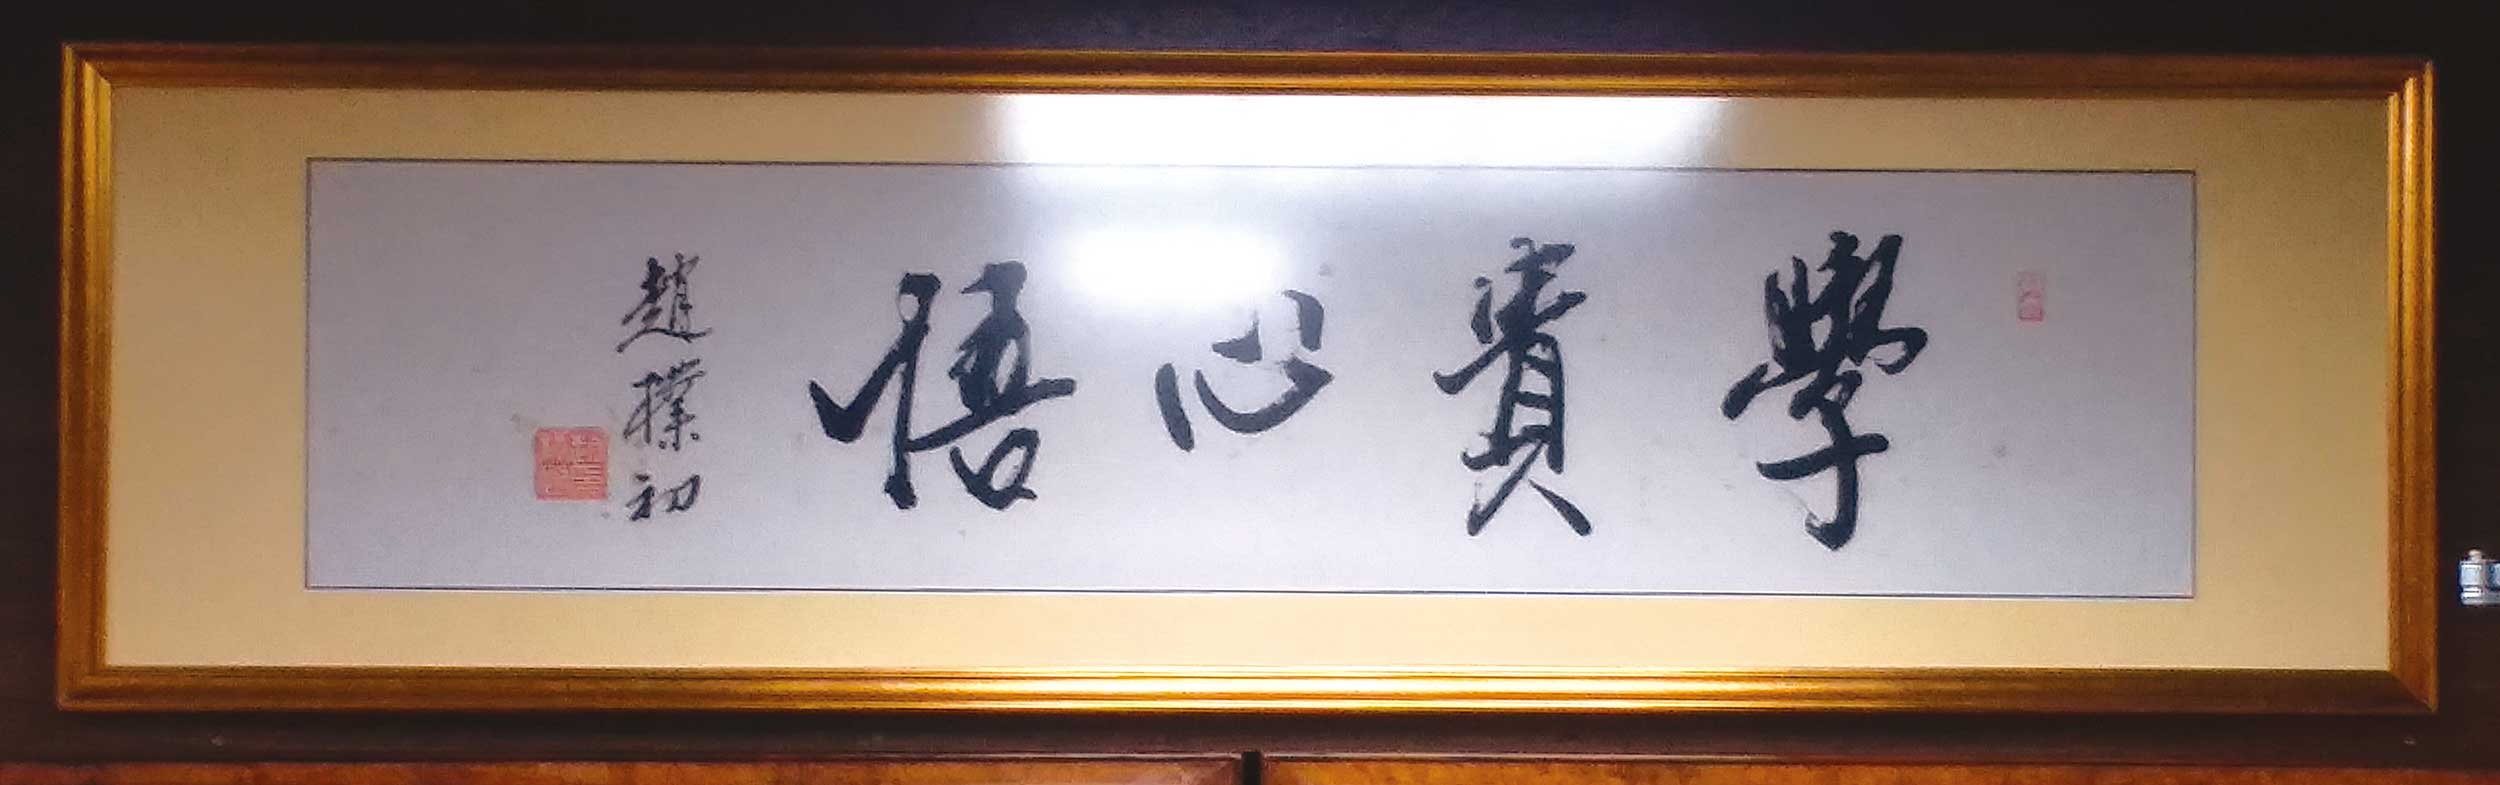 趙樸初老先生之墨寶題字，語重情深，收藏在大師工作間。